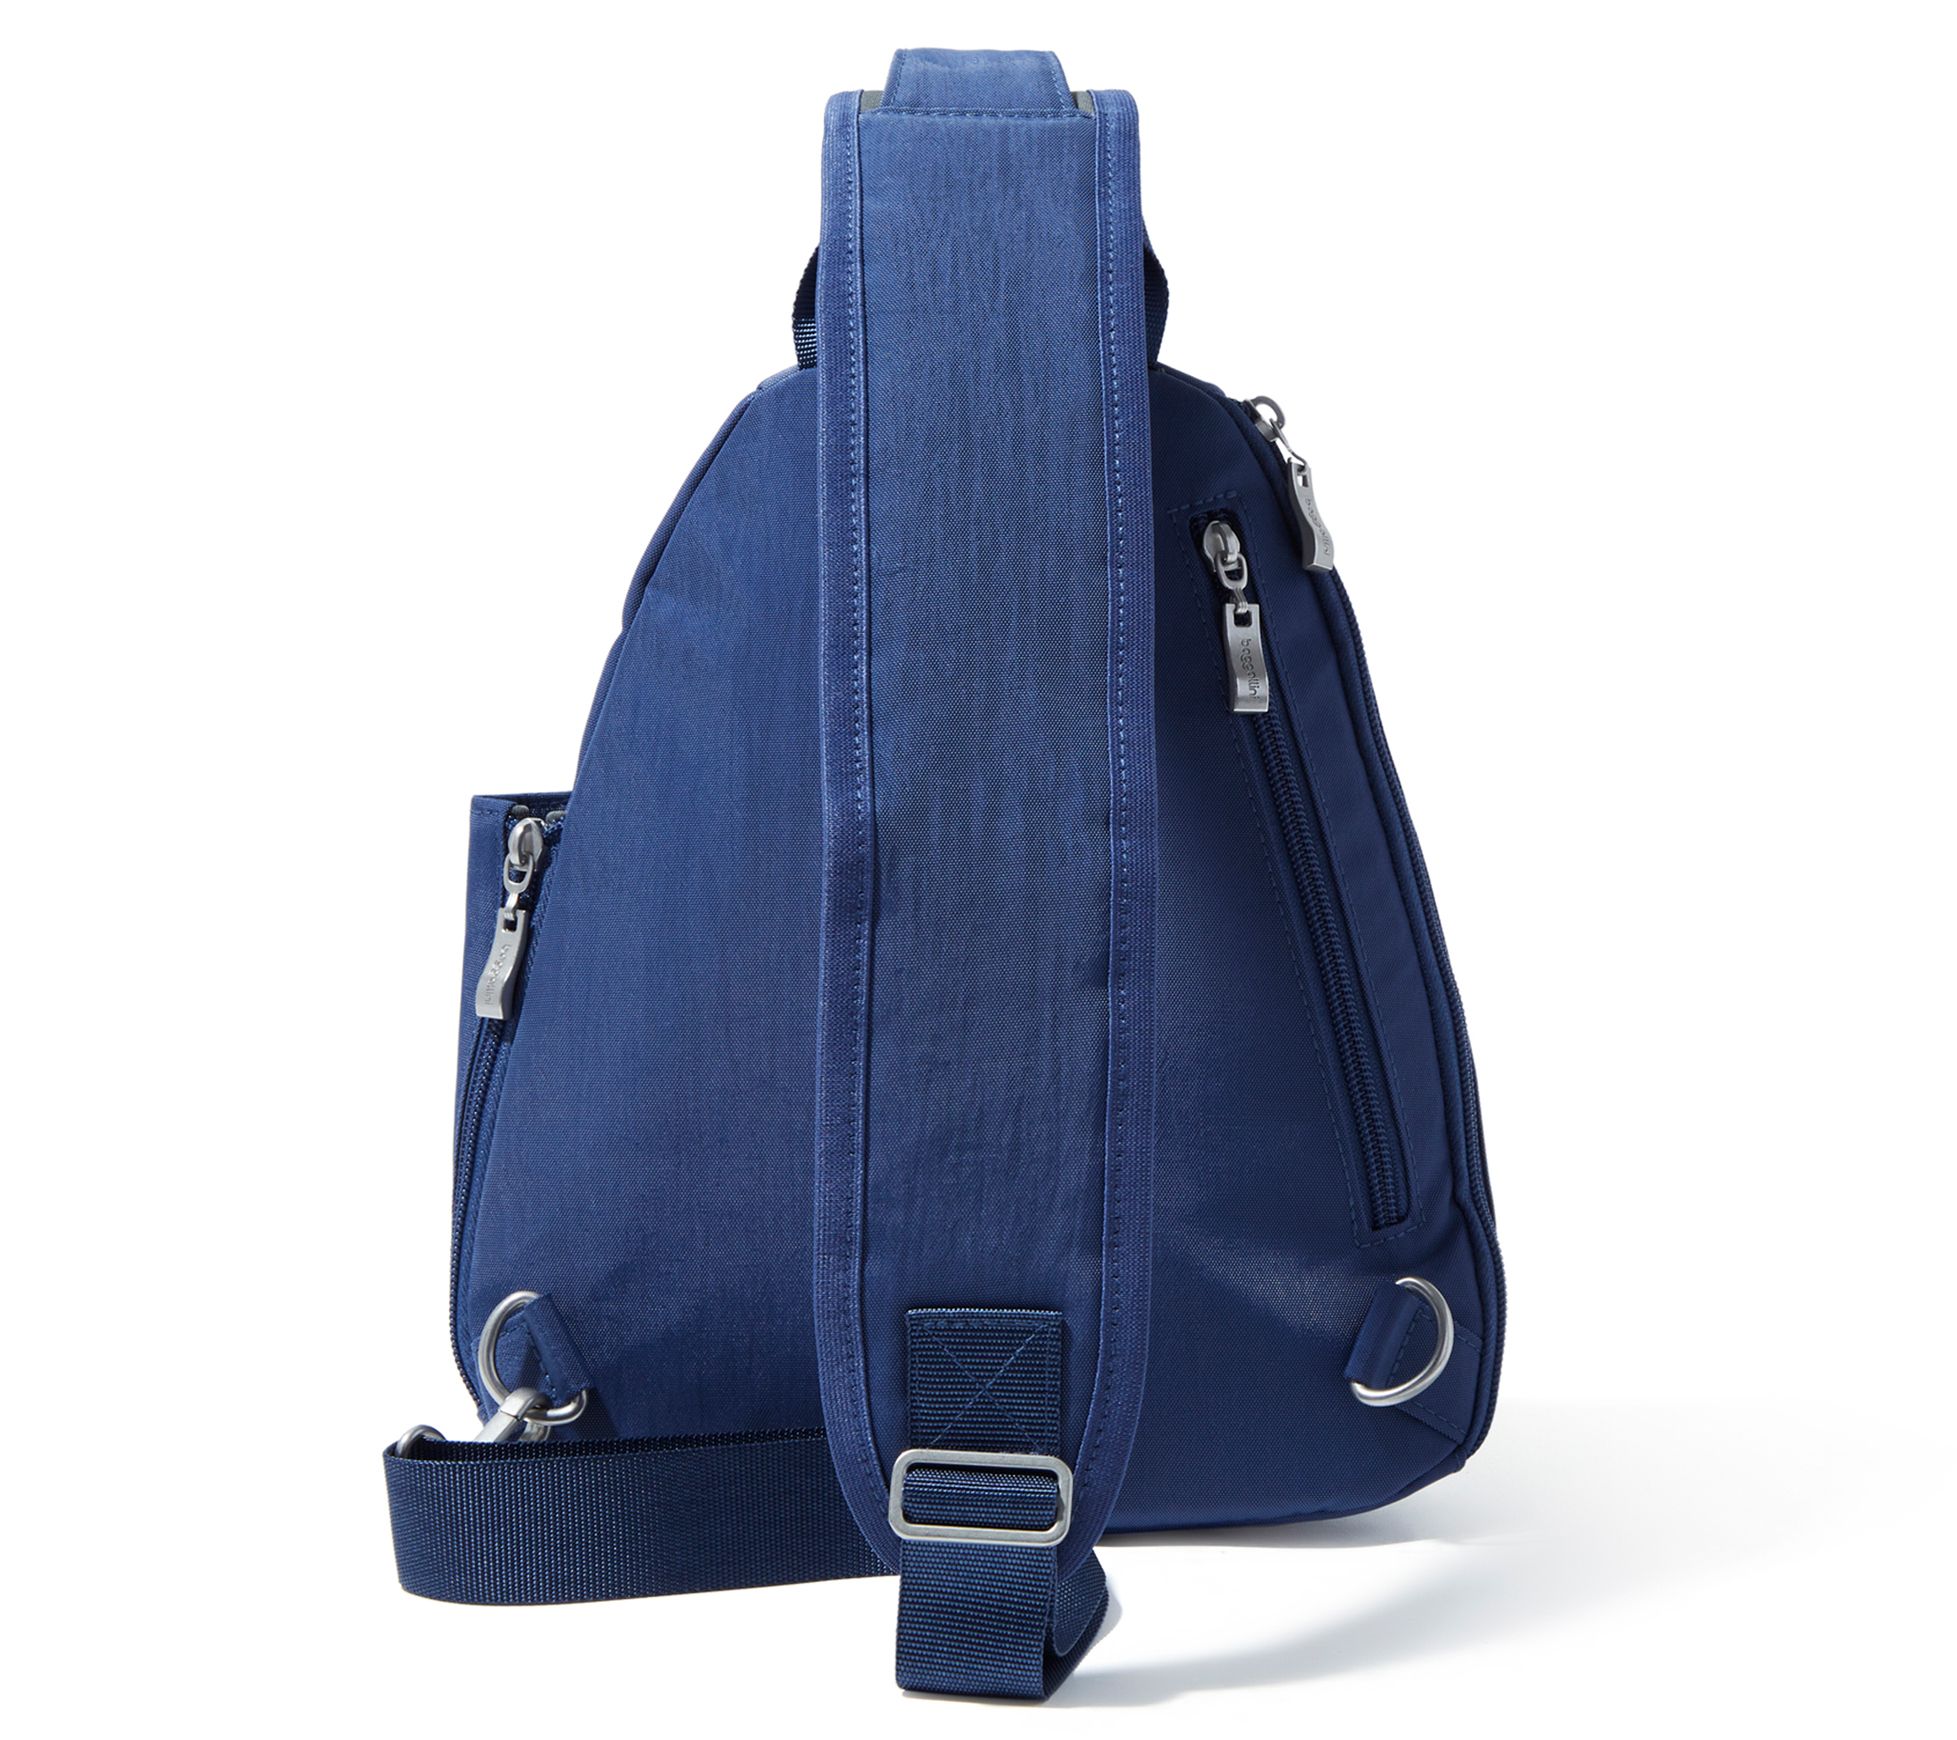 Printed Sling Bag With Adjustable Shoulder Strap at Best Price in